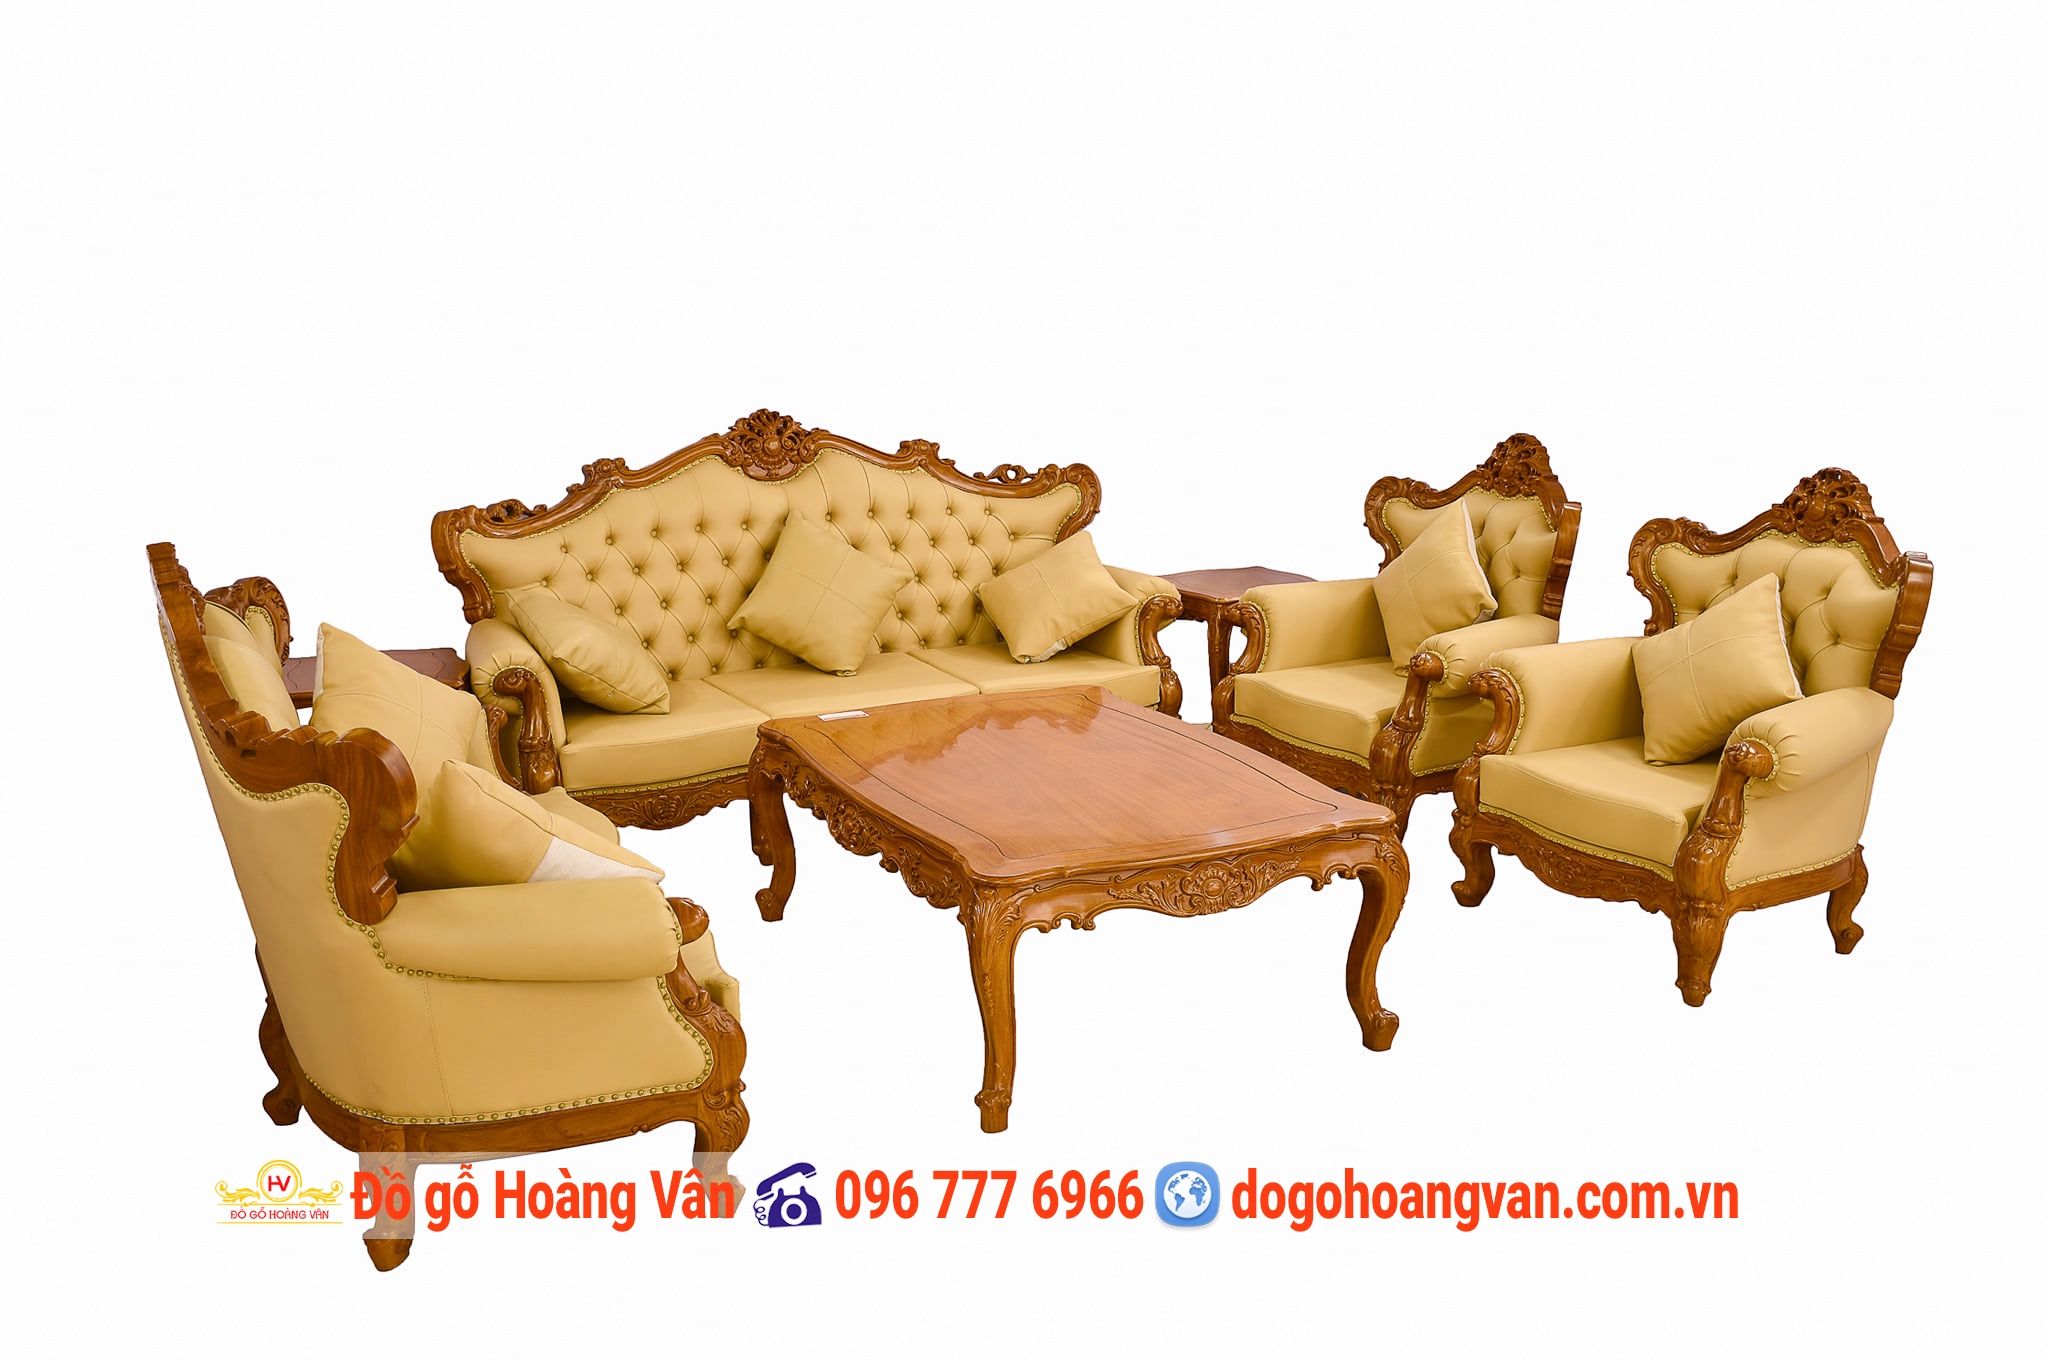 Bộ Bàn Ghế Đẹp Sofa Đệm Mút Kiểu Châu Âu BG330 – Đồ gỗ Hoàng Vân